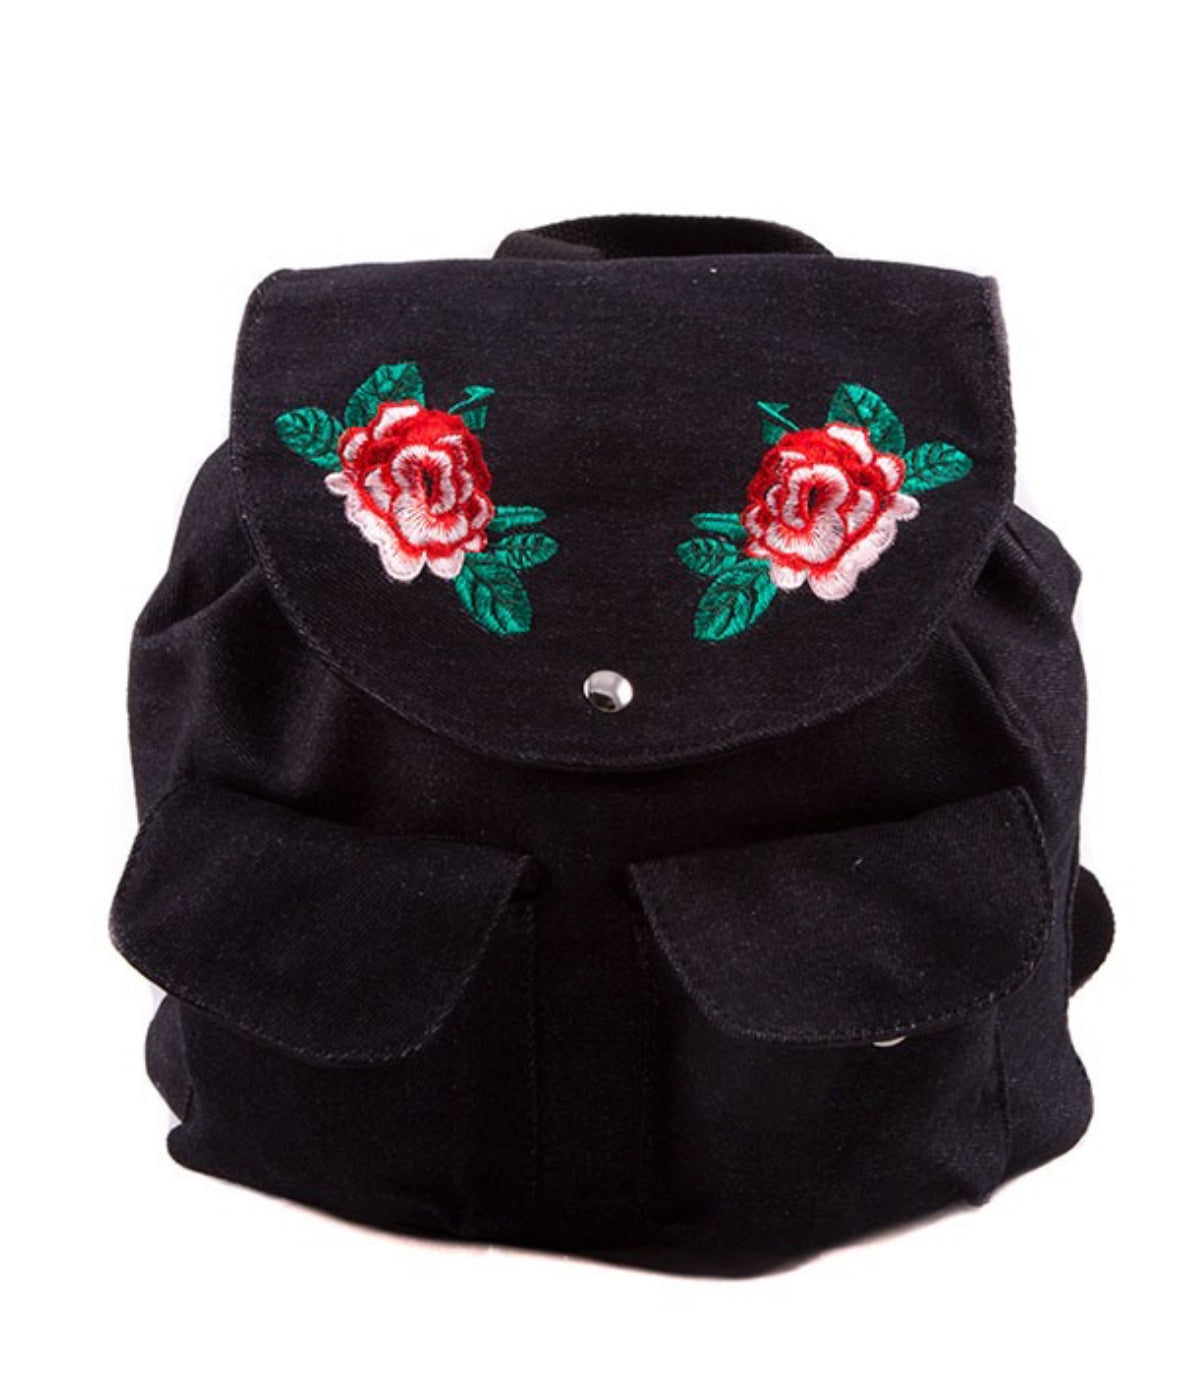 Rose Embroidered Denim Backpack